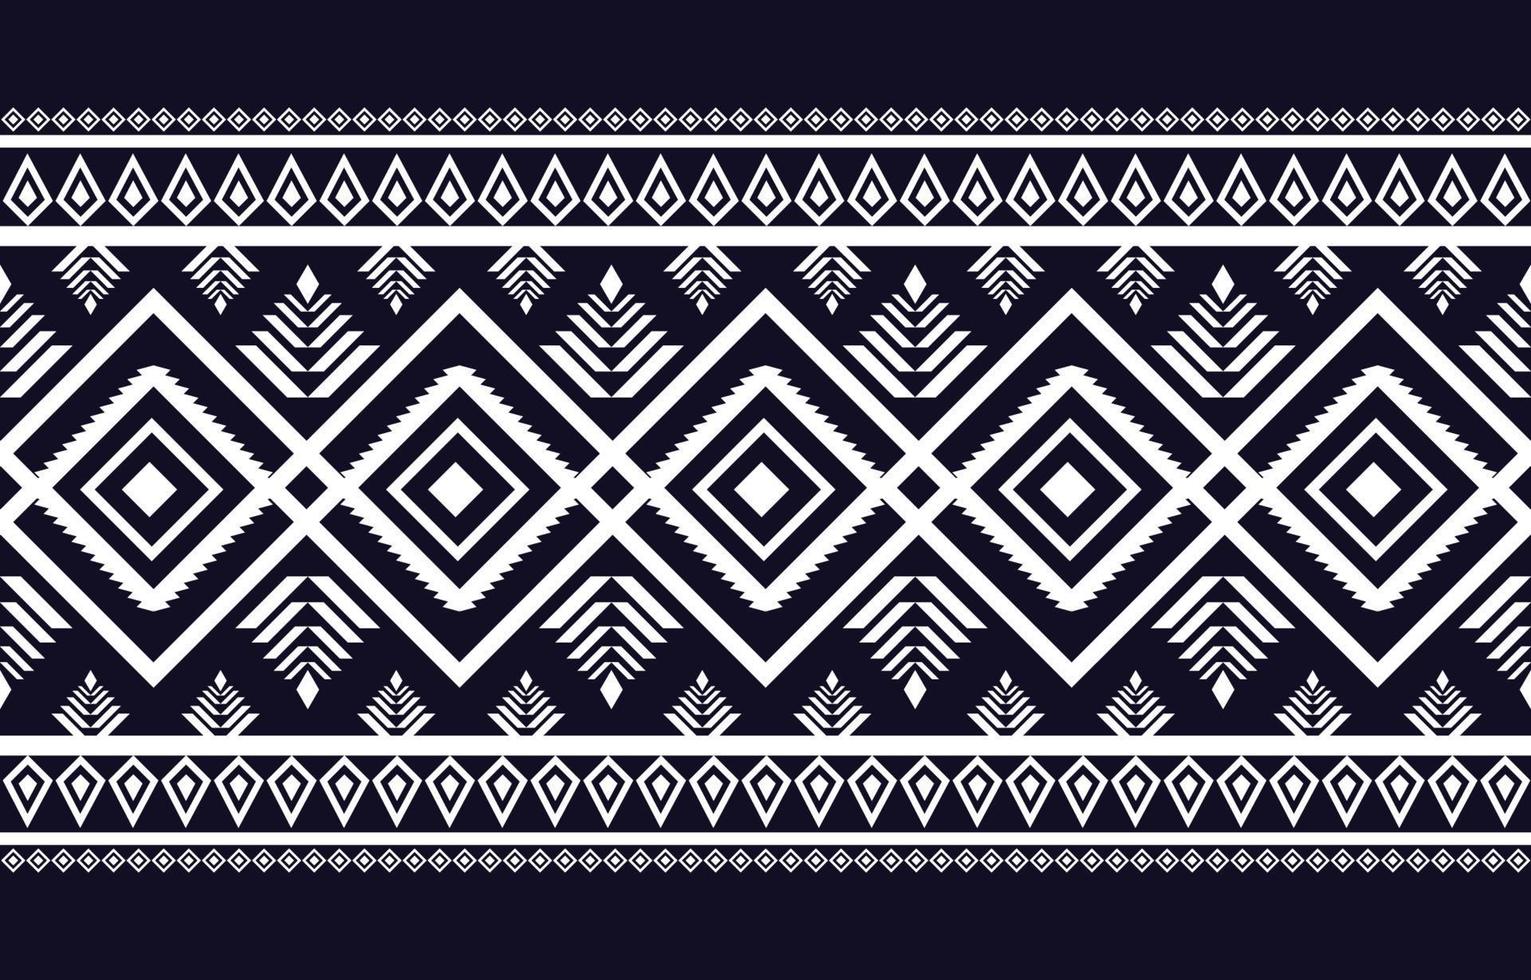 disegno geometrico etnico astratto senza soluzione di continuità in stile nativo disegni per sfondi, sfondi, tappeti, involucri, tessuti, batik, illustrazione vettoriale tessili